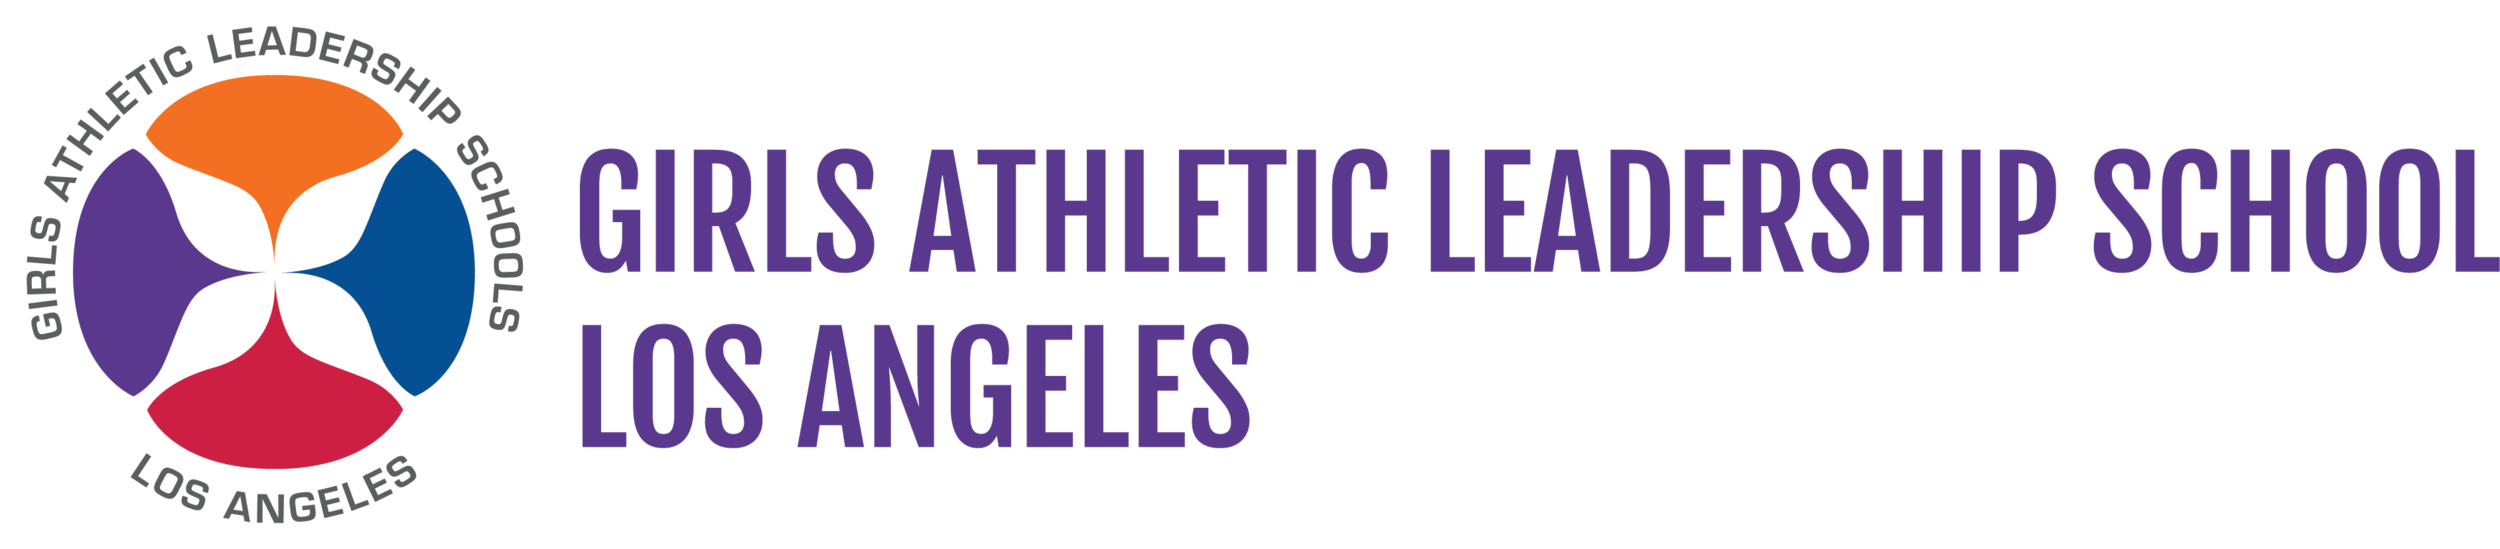 Girls Athletic Leadership School Los Angeles